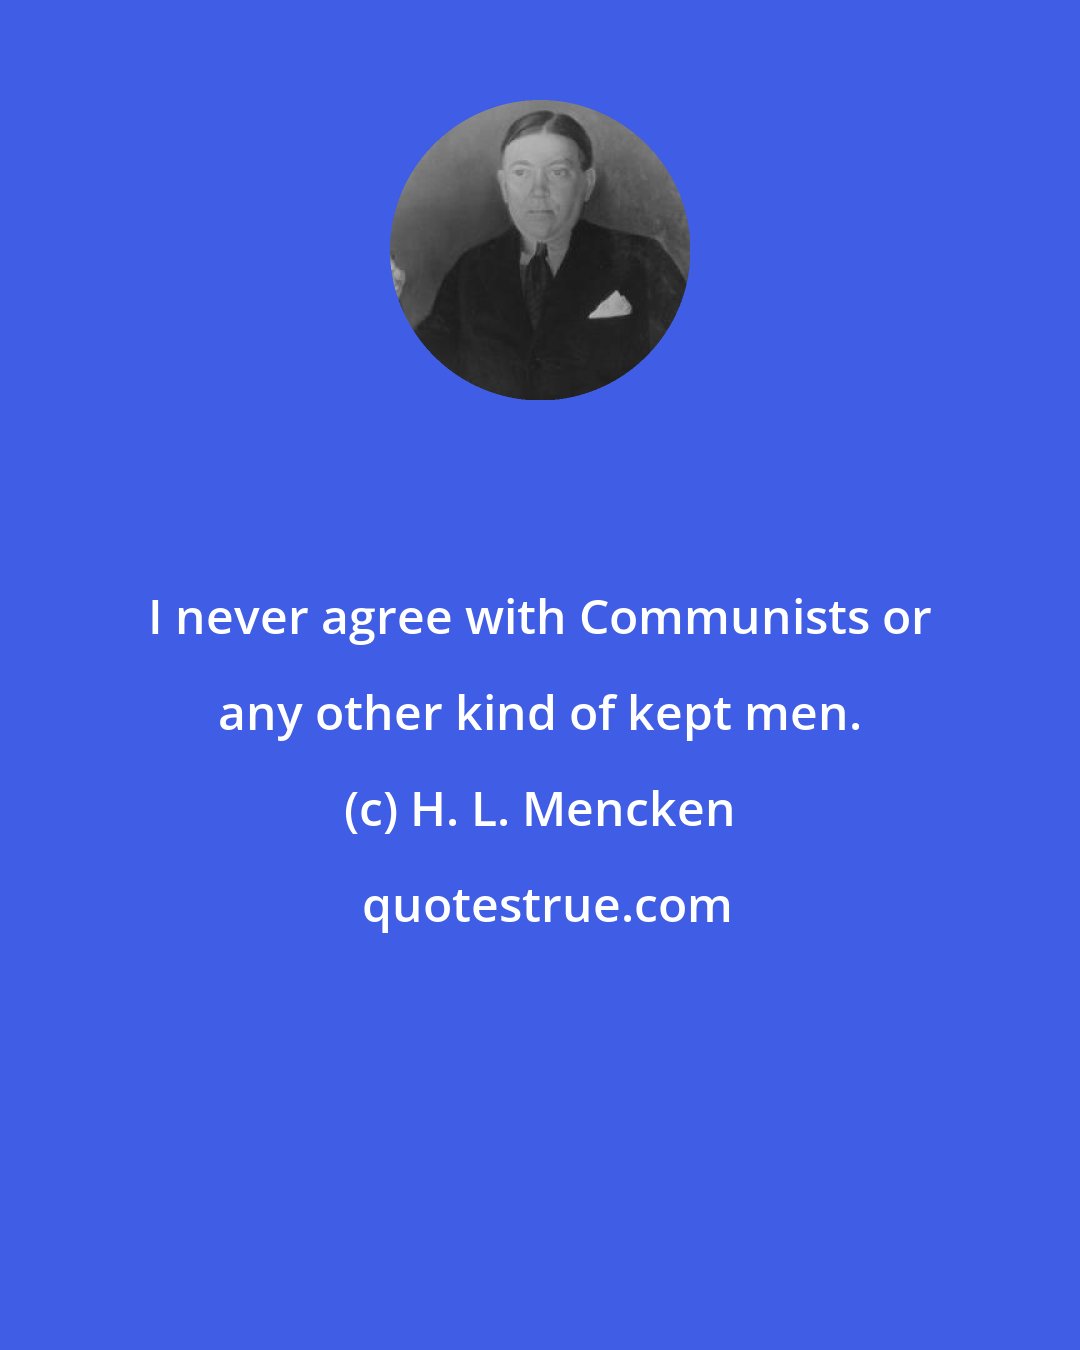 H. L. Mencken: I never agree with Communists or any other kind of kept men.